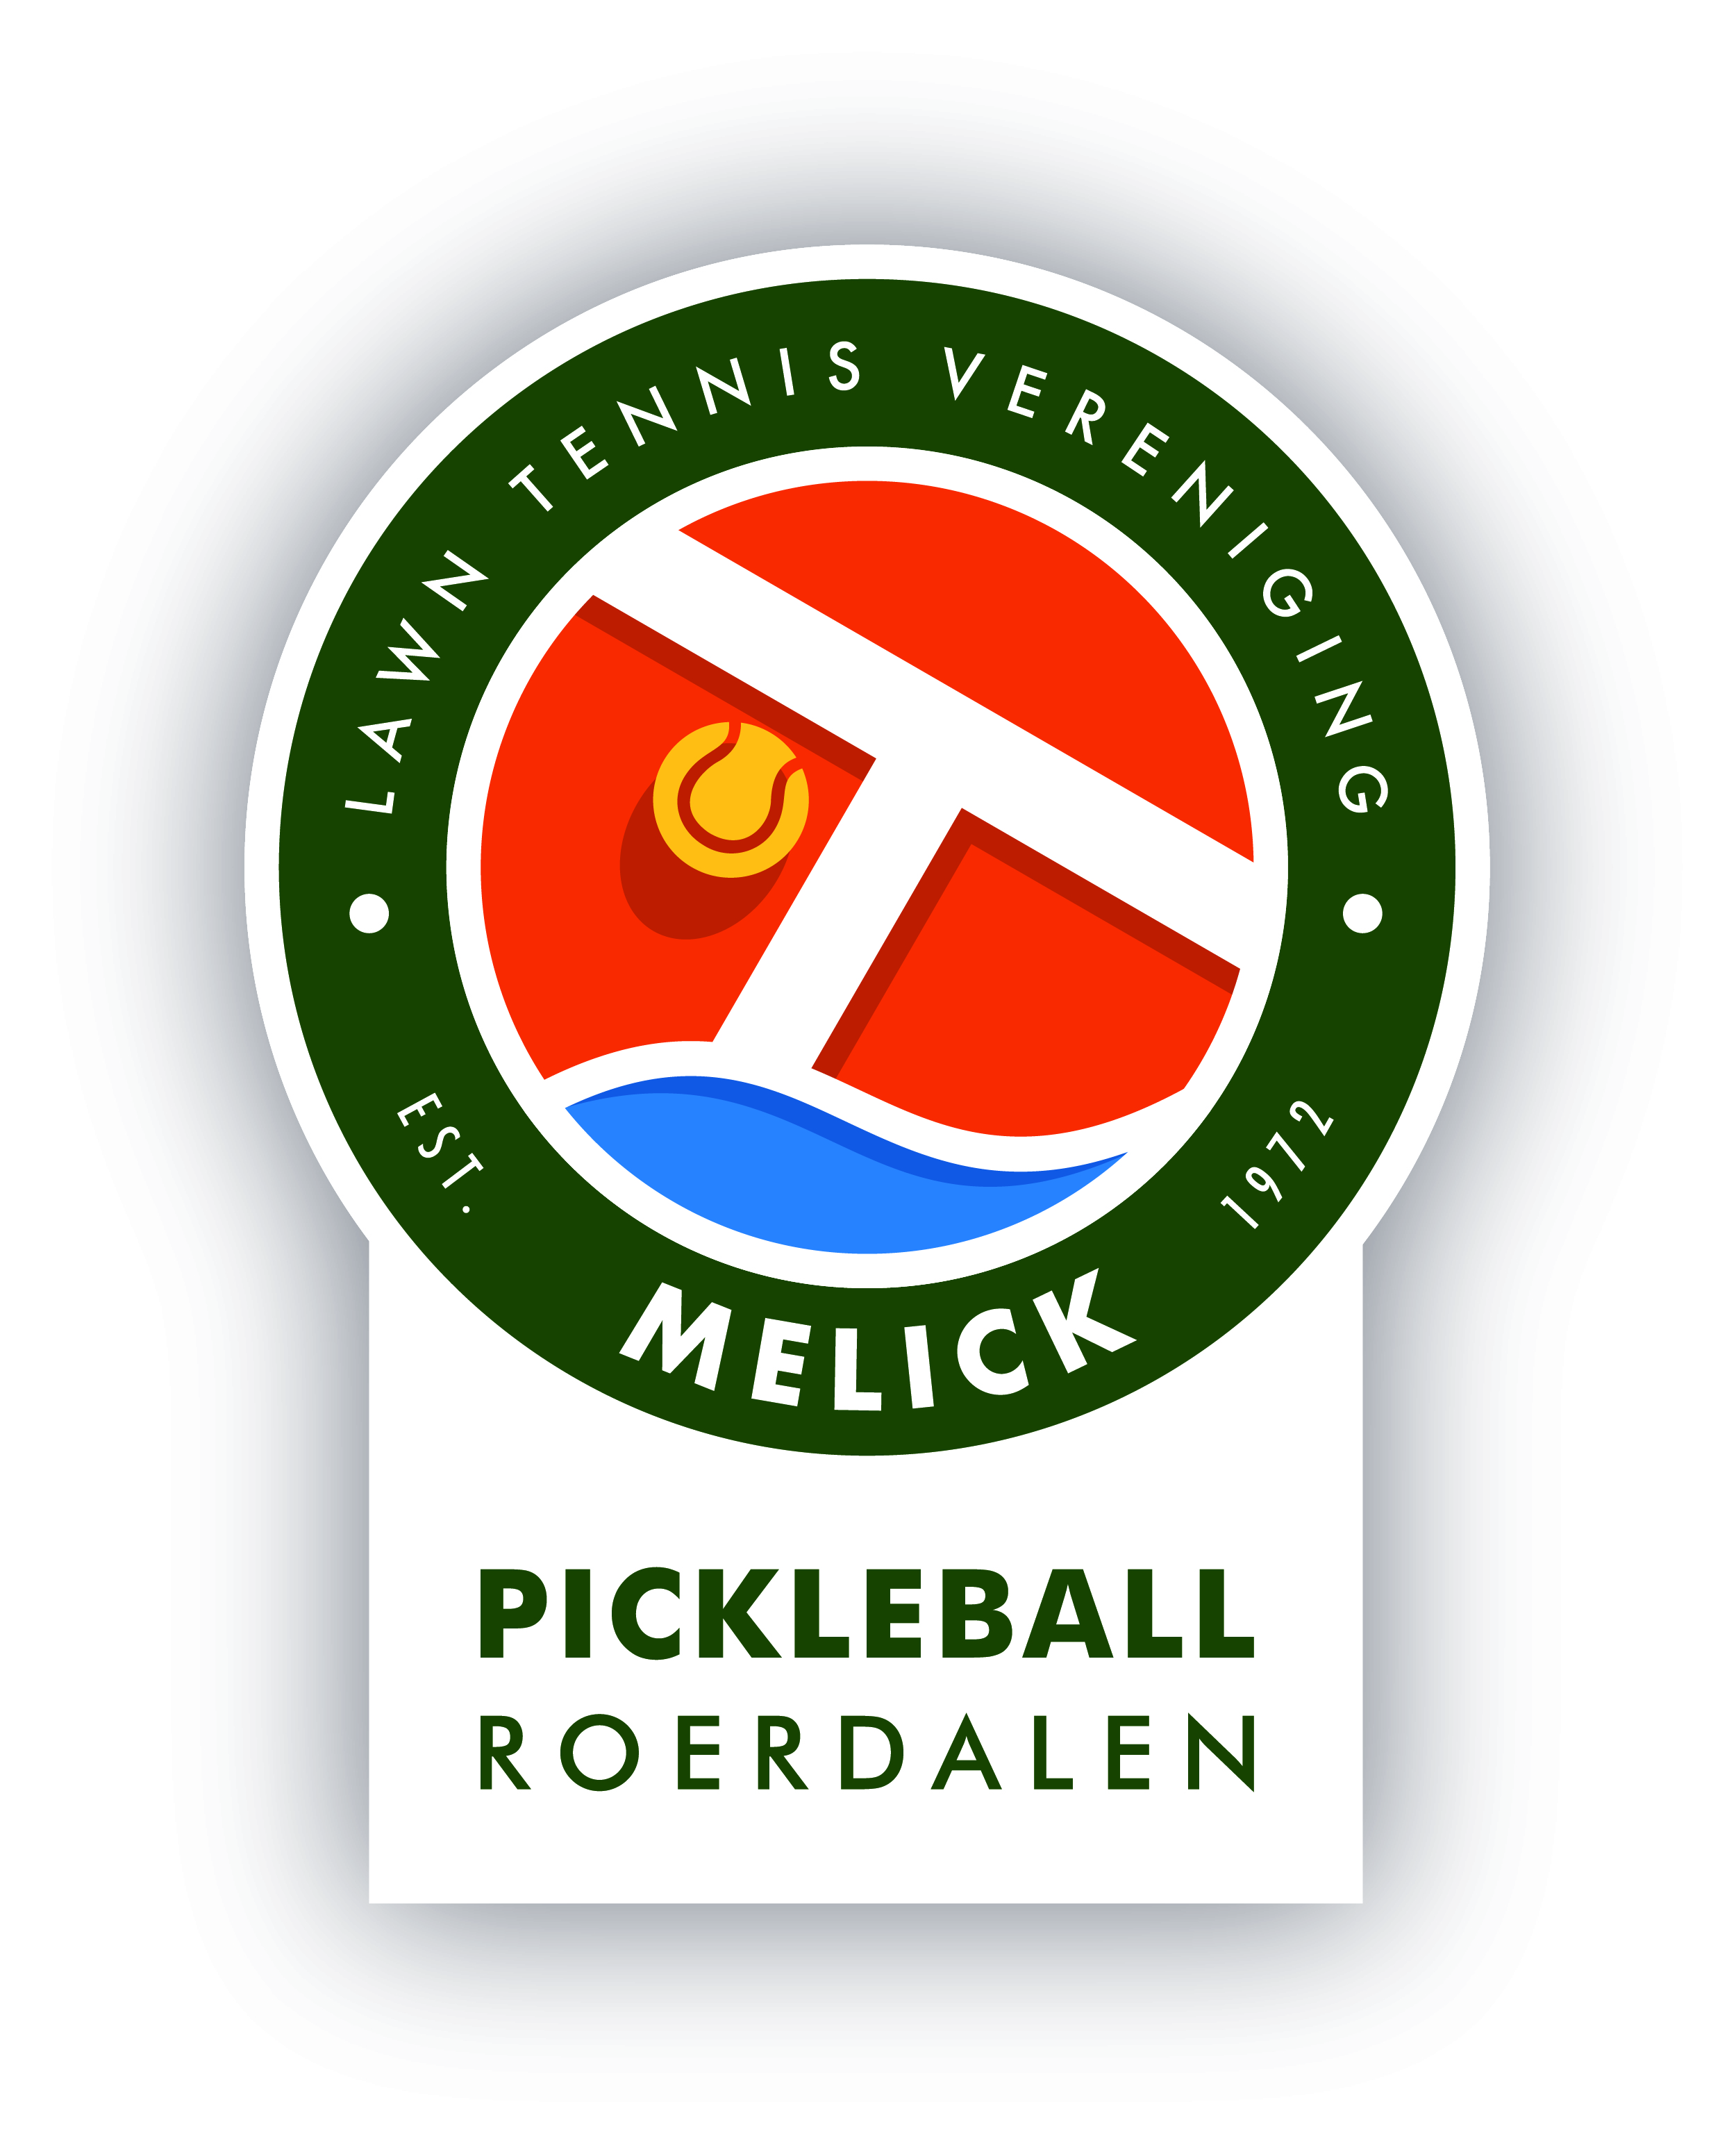 Pickleball Roerdalen (LTV Melick)